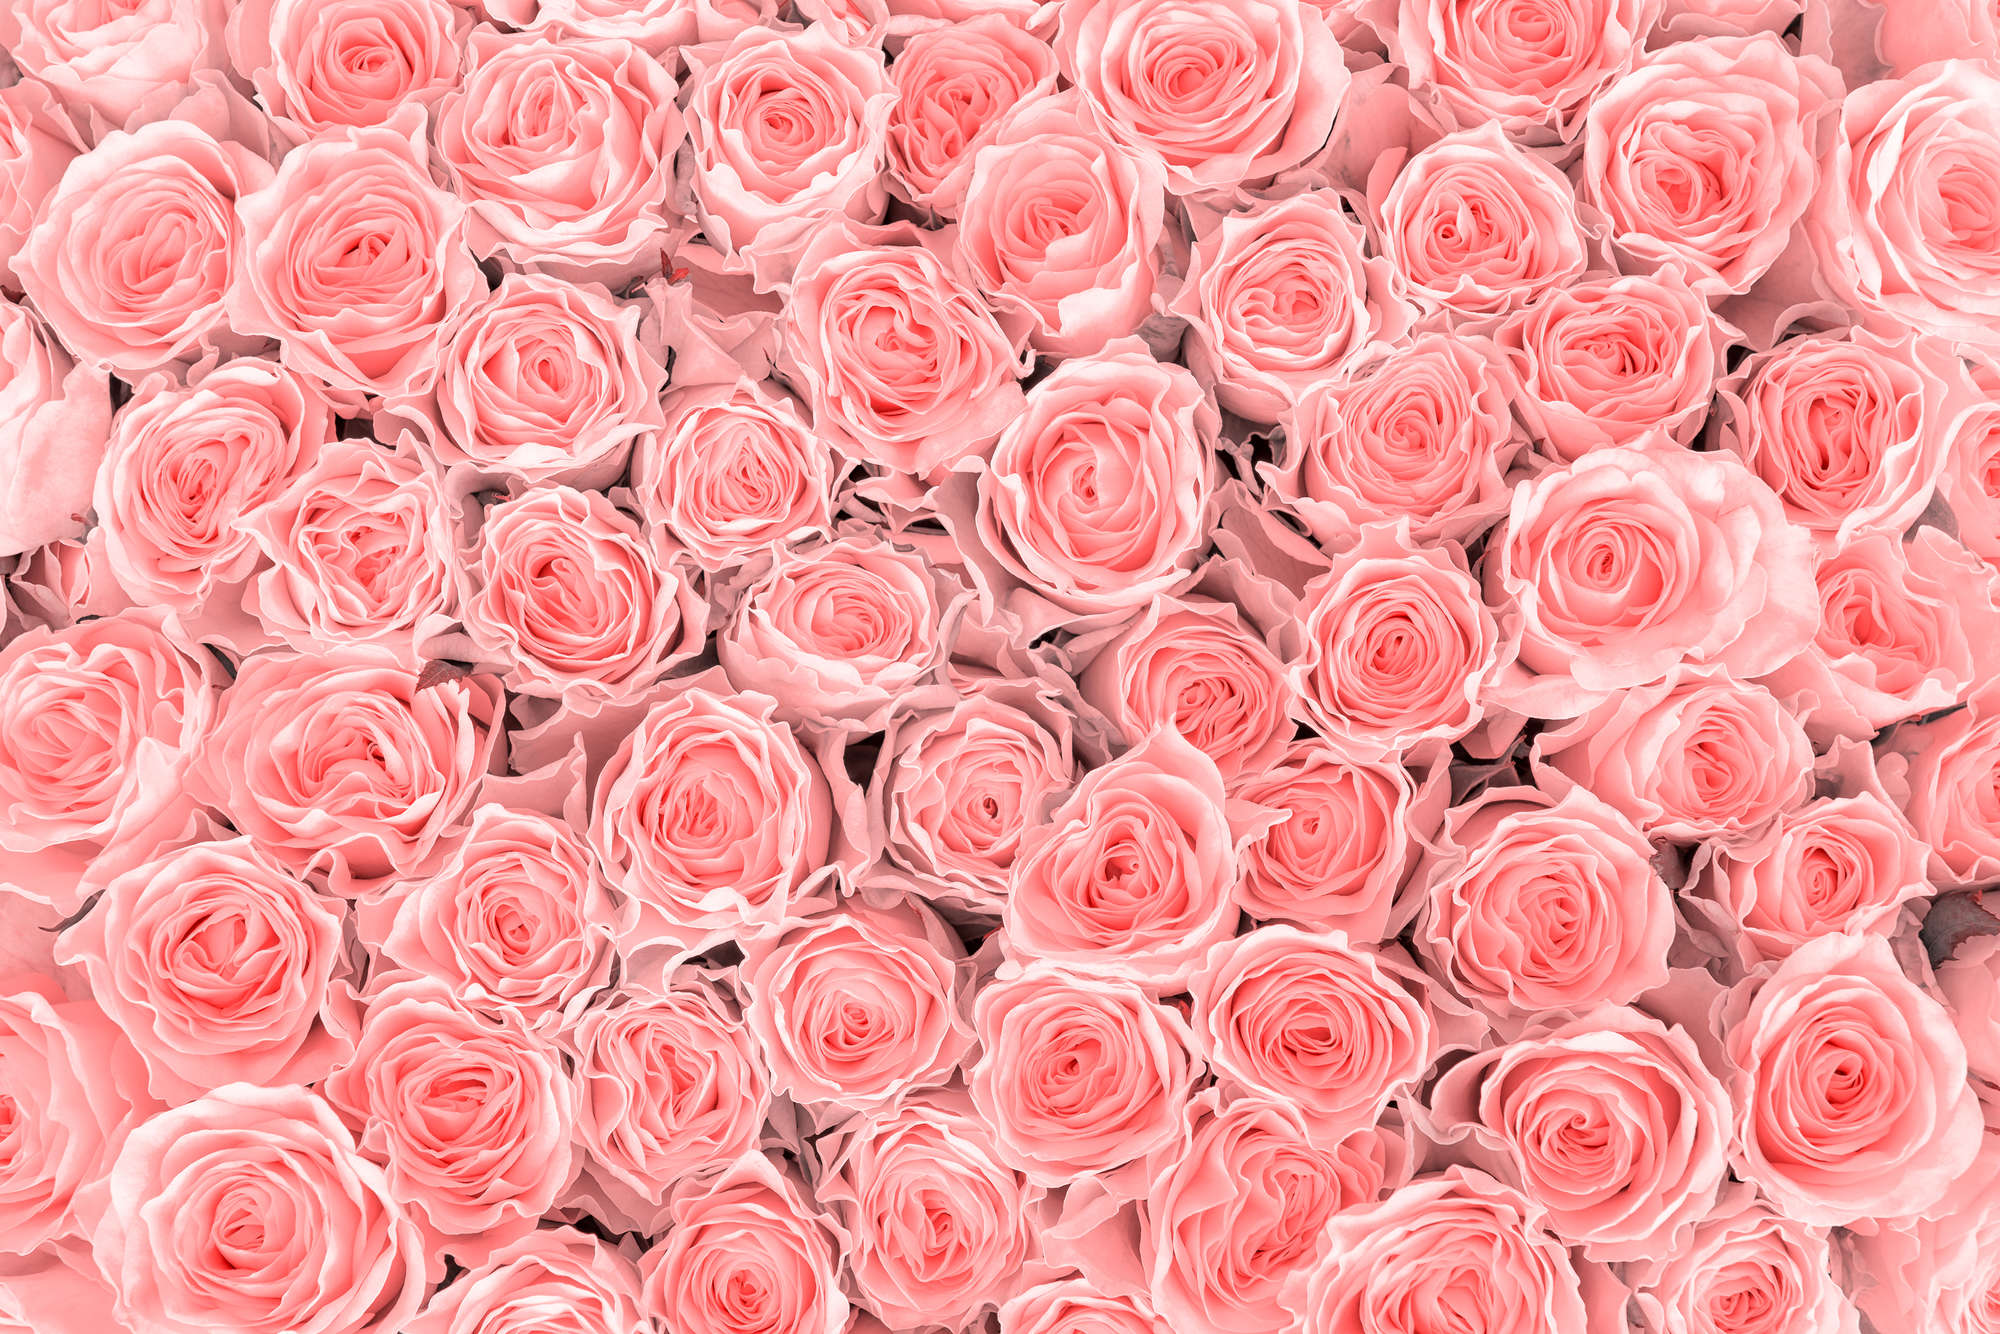             Papier peint végétal roses roses sur intissé lisse premium
        